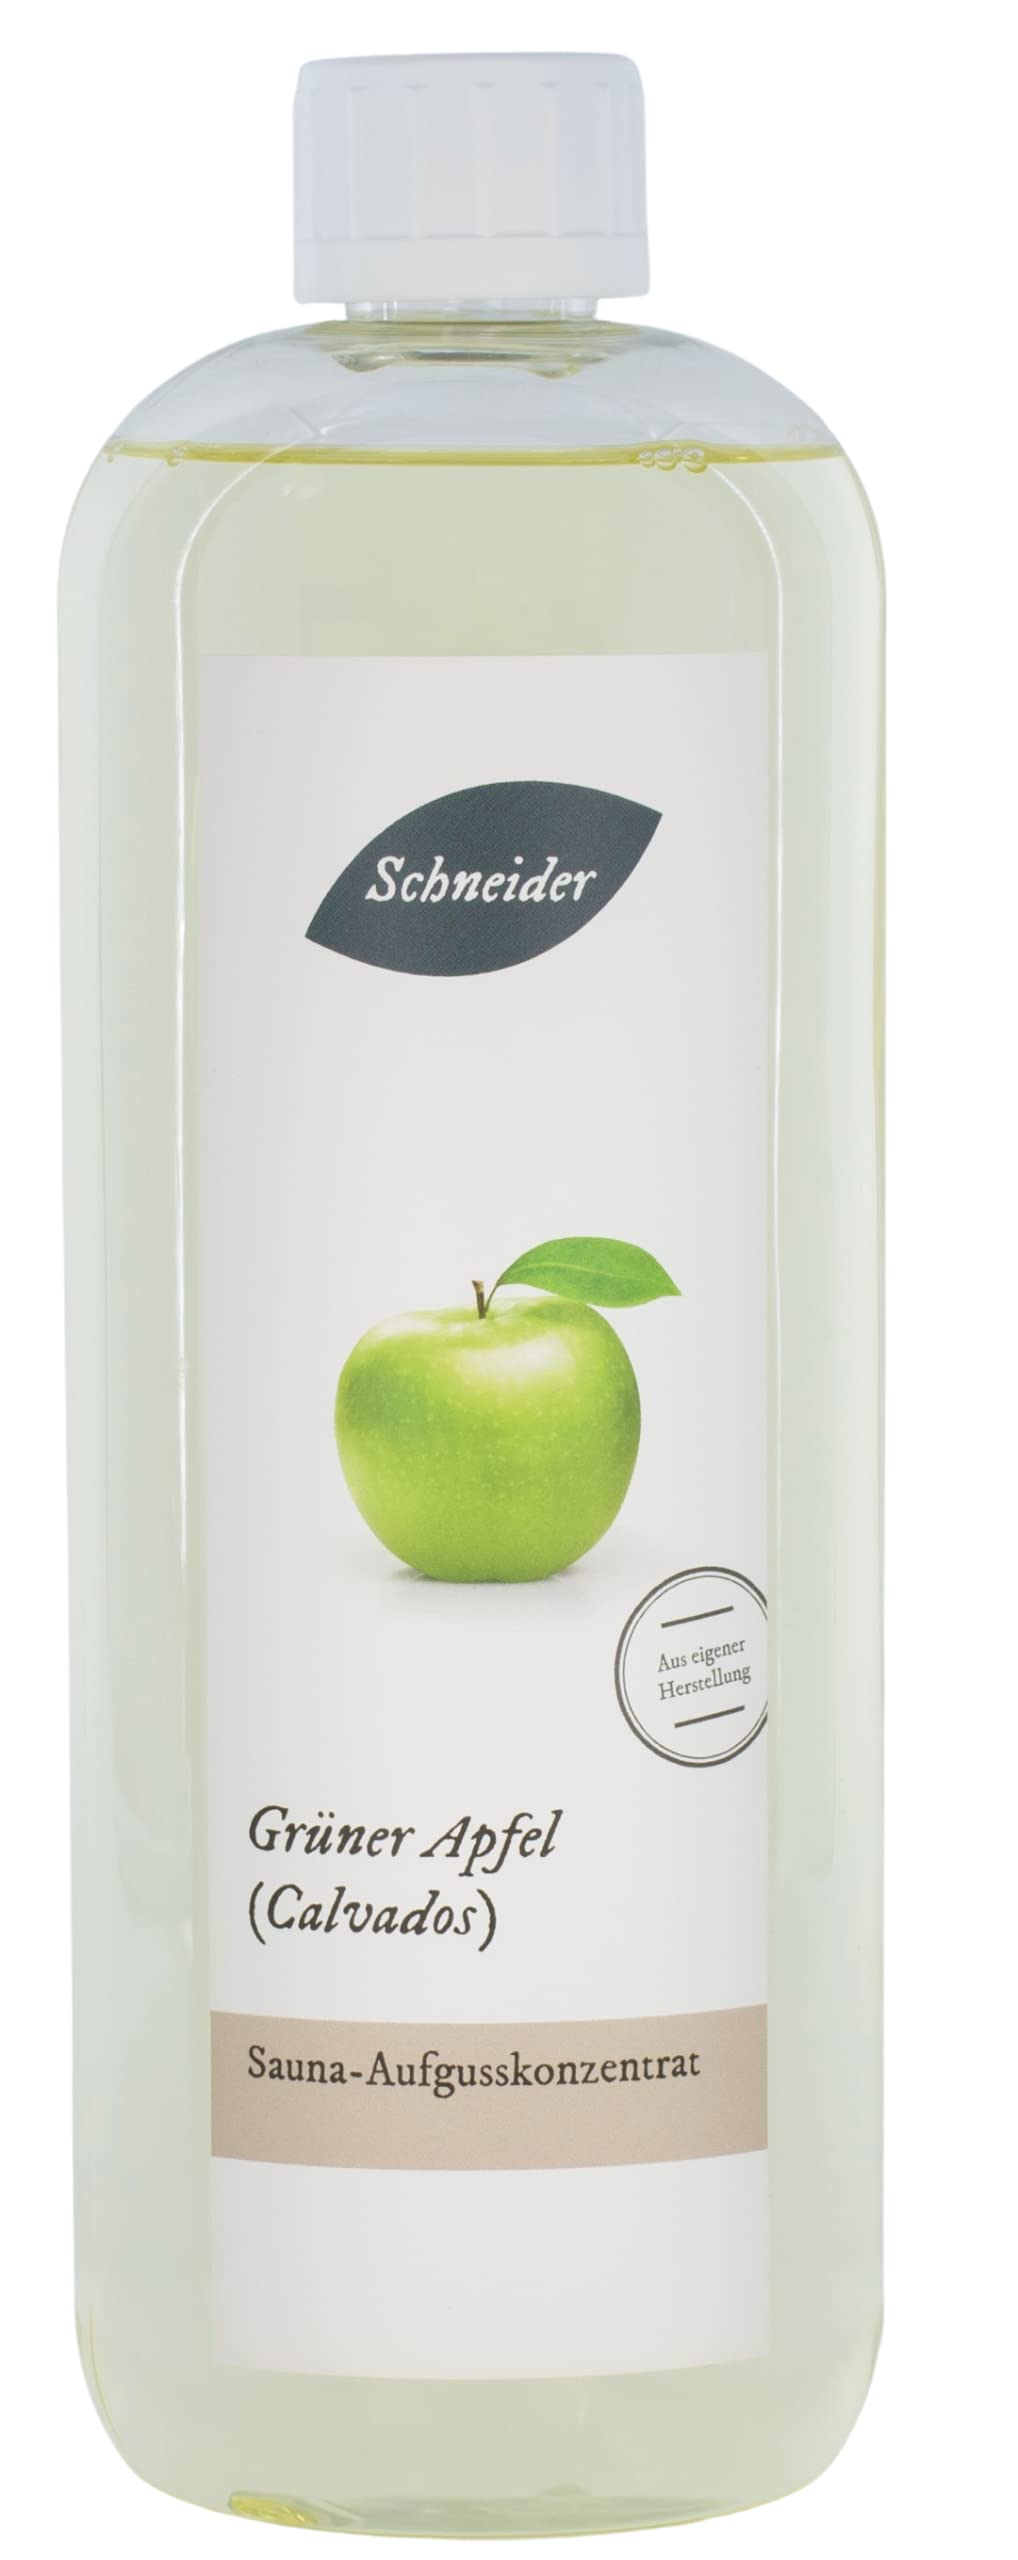 Saunabedarf Schneider - Aufgusskonzentrat Grüner Apfel (Calvados) - saftig-frischer Saunaaufguss - 1000ml Inhalt